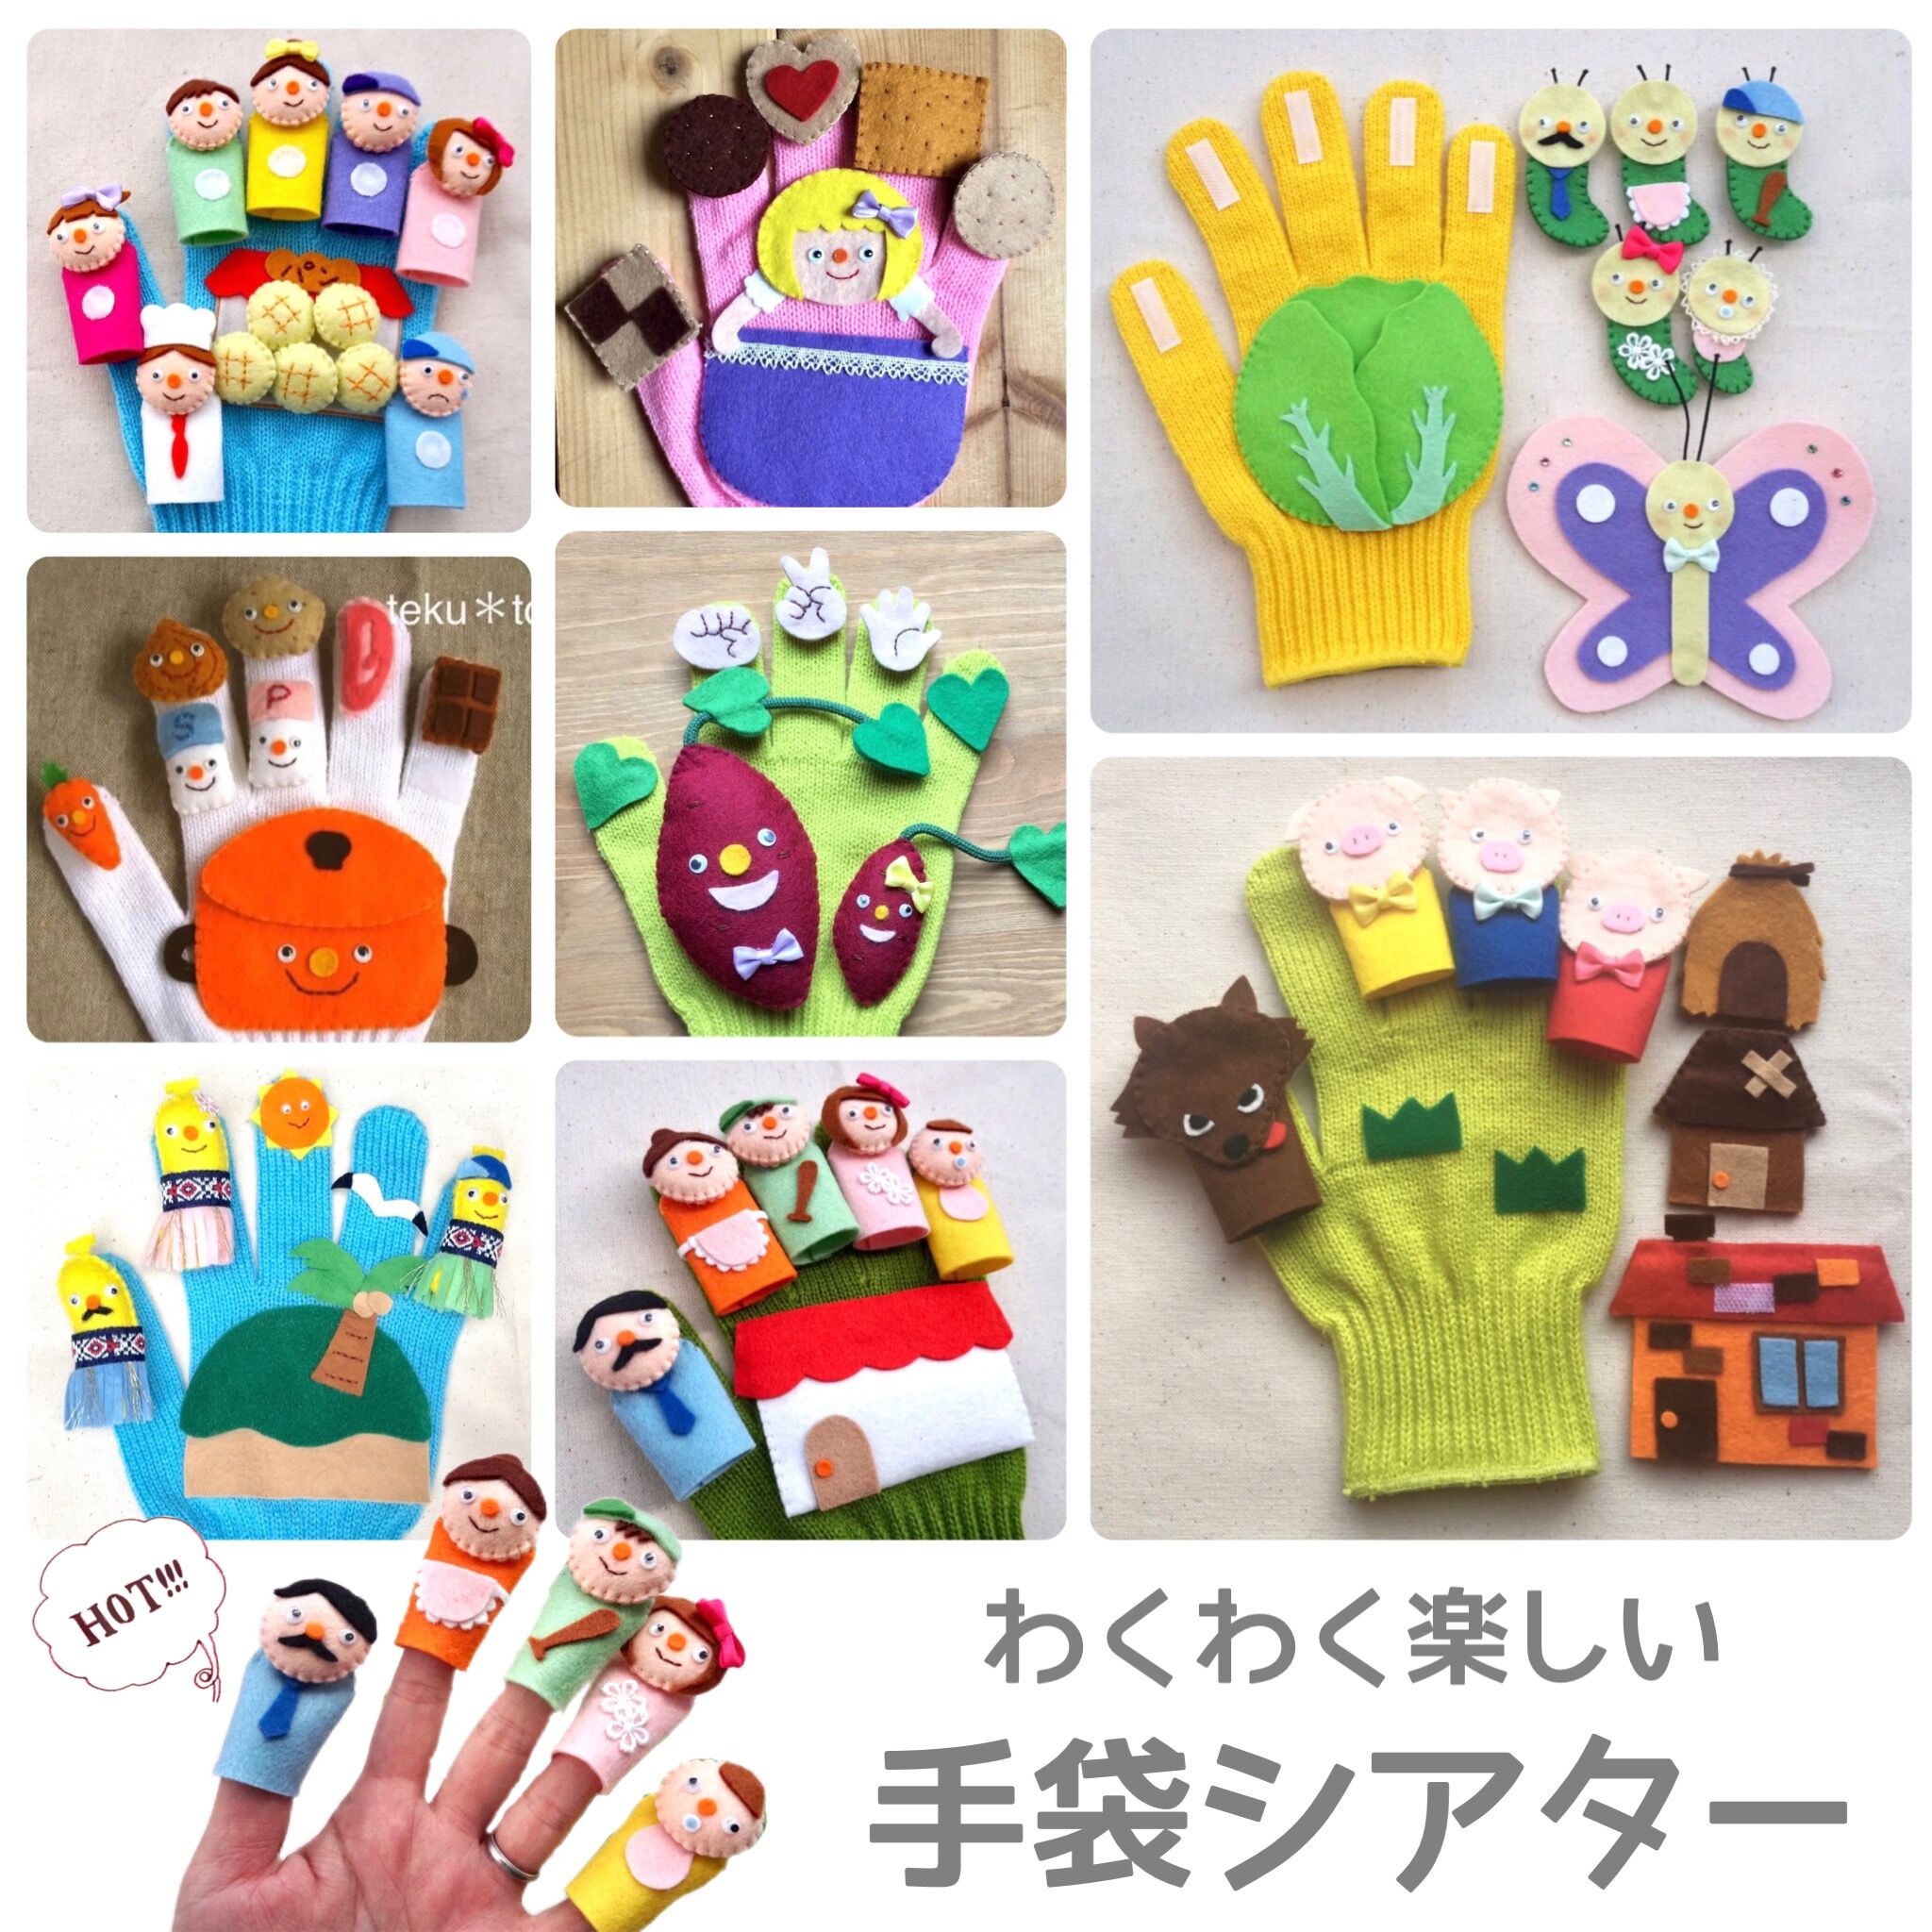 手袋シアターおまとめ買い9点セット10299円→9000円